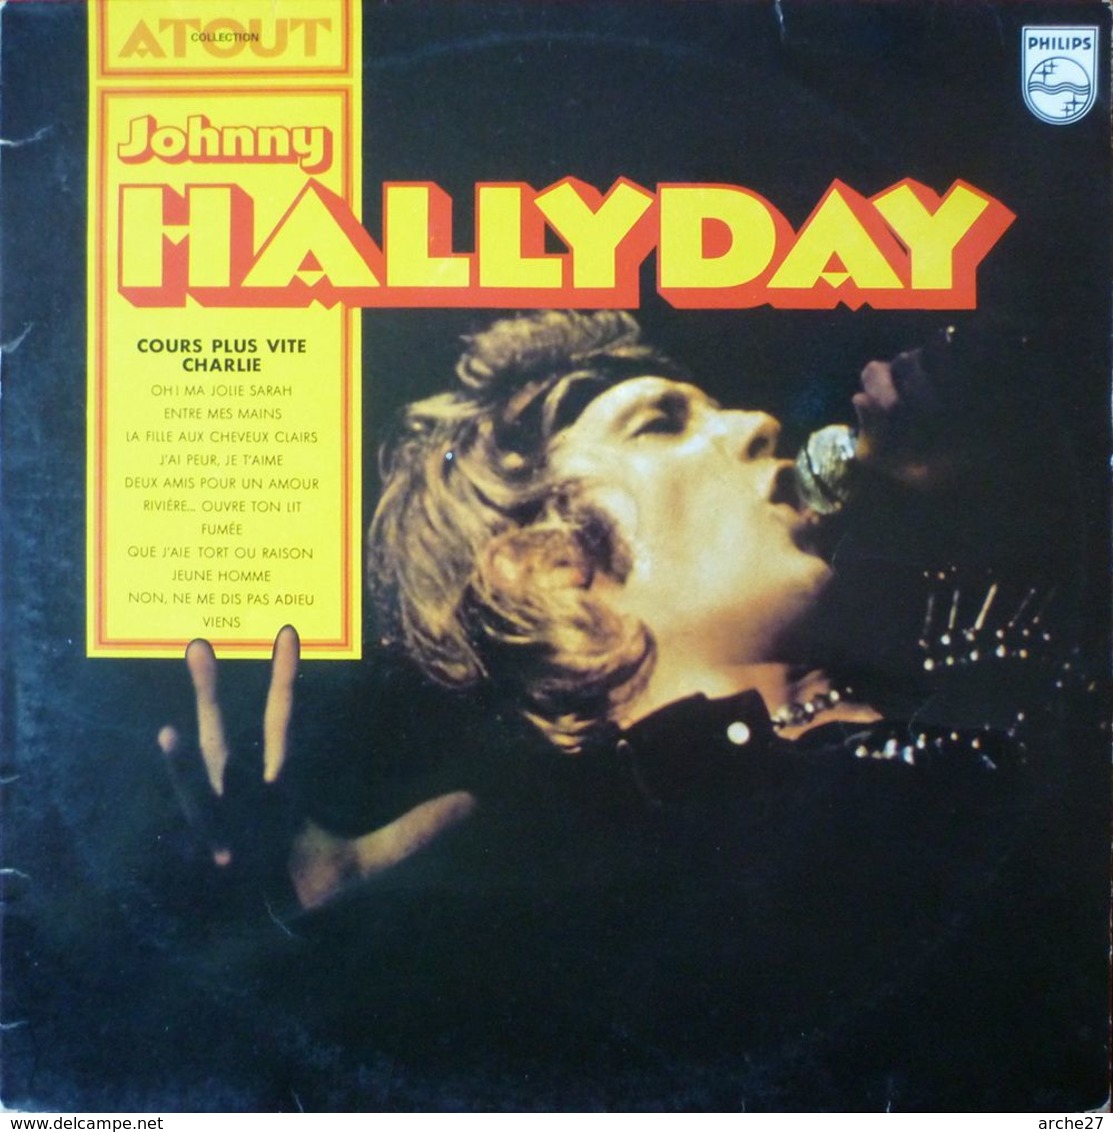 JOHNNY HALLYDAY - LP - 33T - Disque Vinyle - Collection ATOUT - 6444 545 - RARE !! - Rock